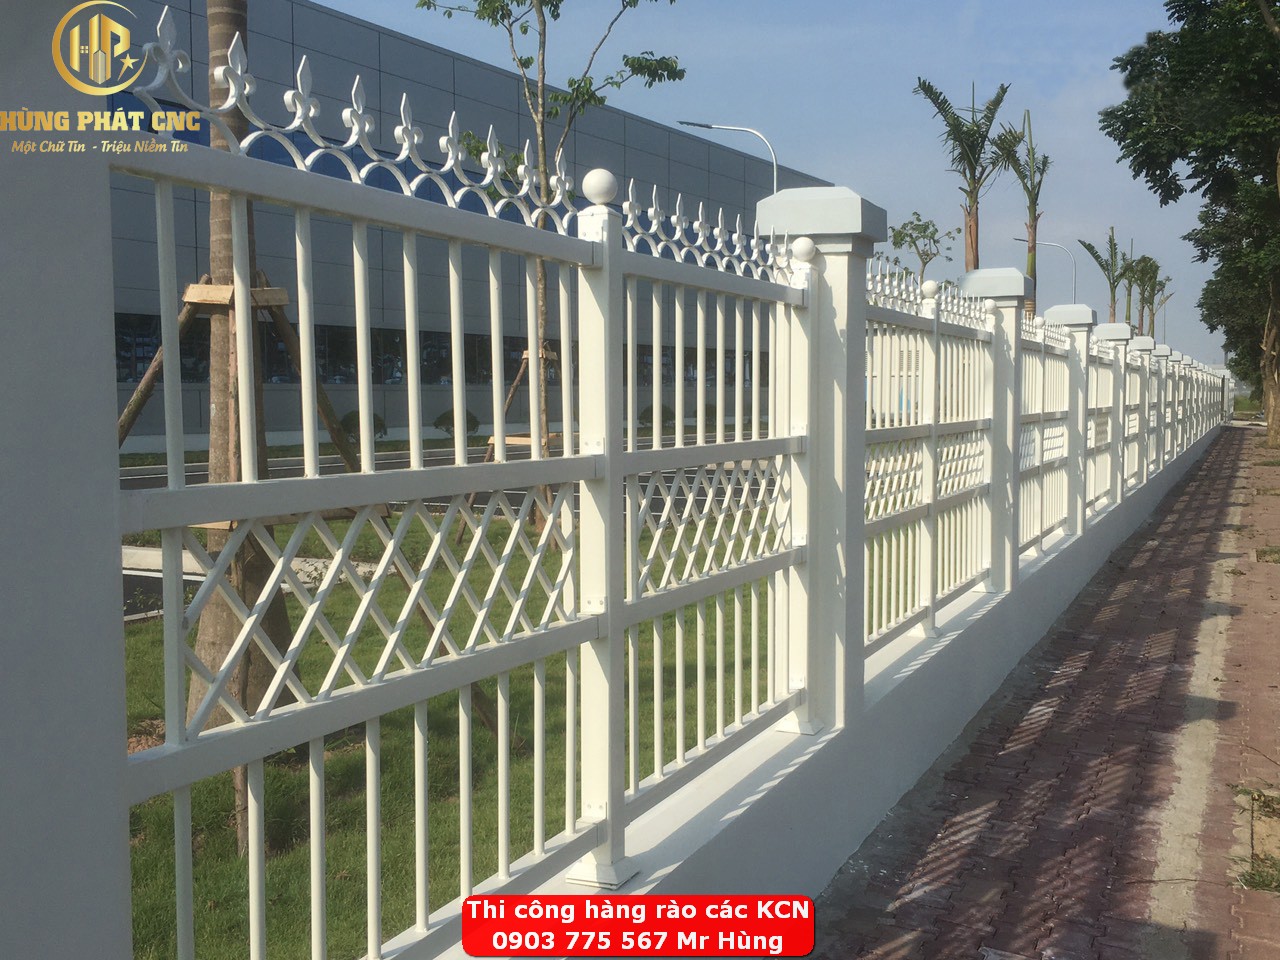 Hàng rào là gì? Tại sao nên kế thiết hàng rào? Hàng rào khu công nghiệp ở Đồng nai